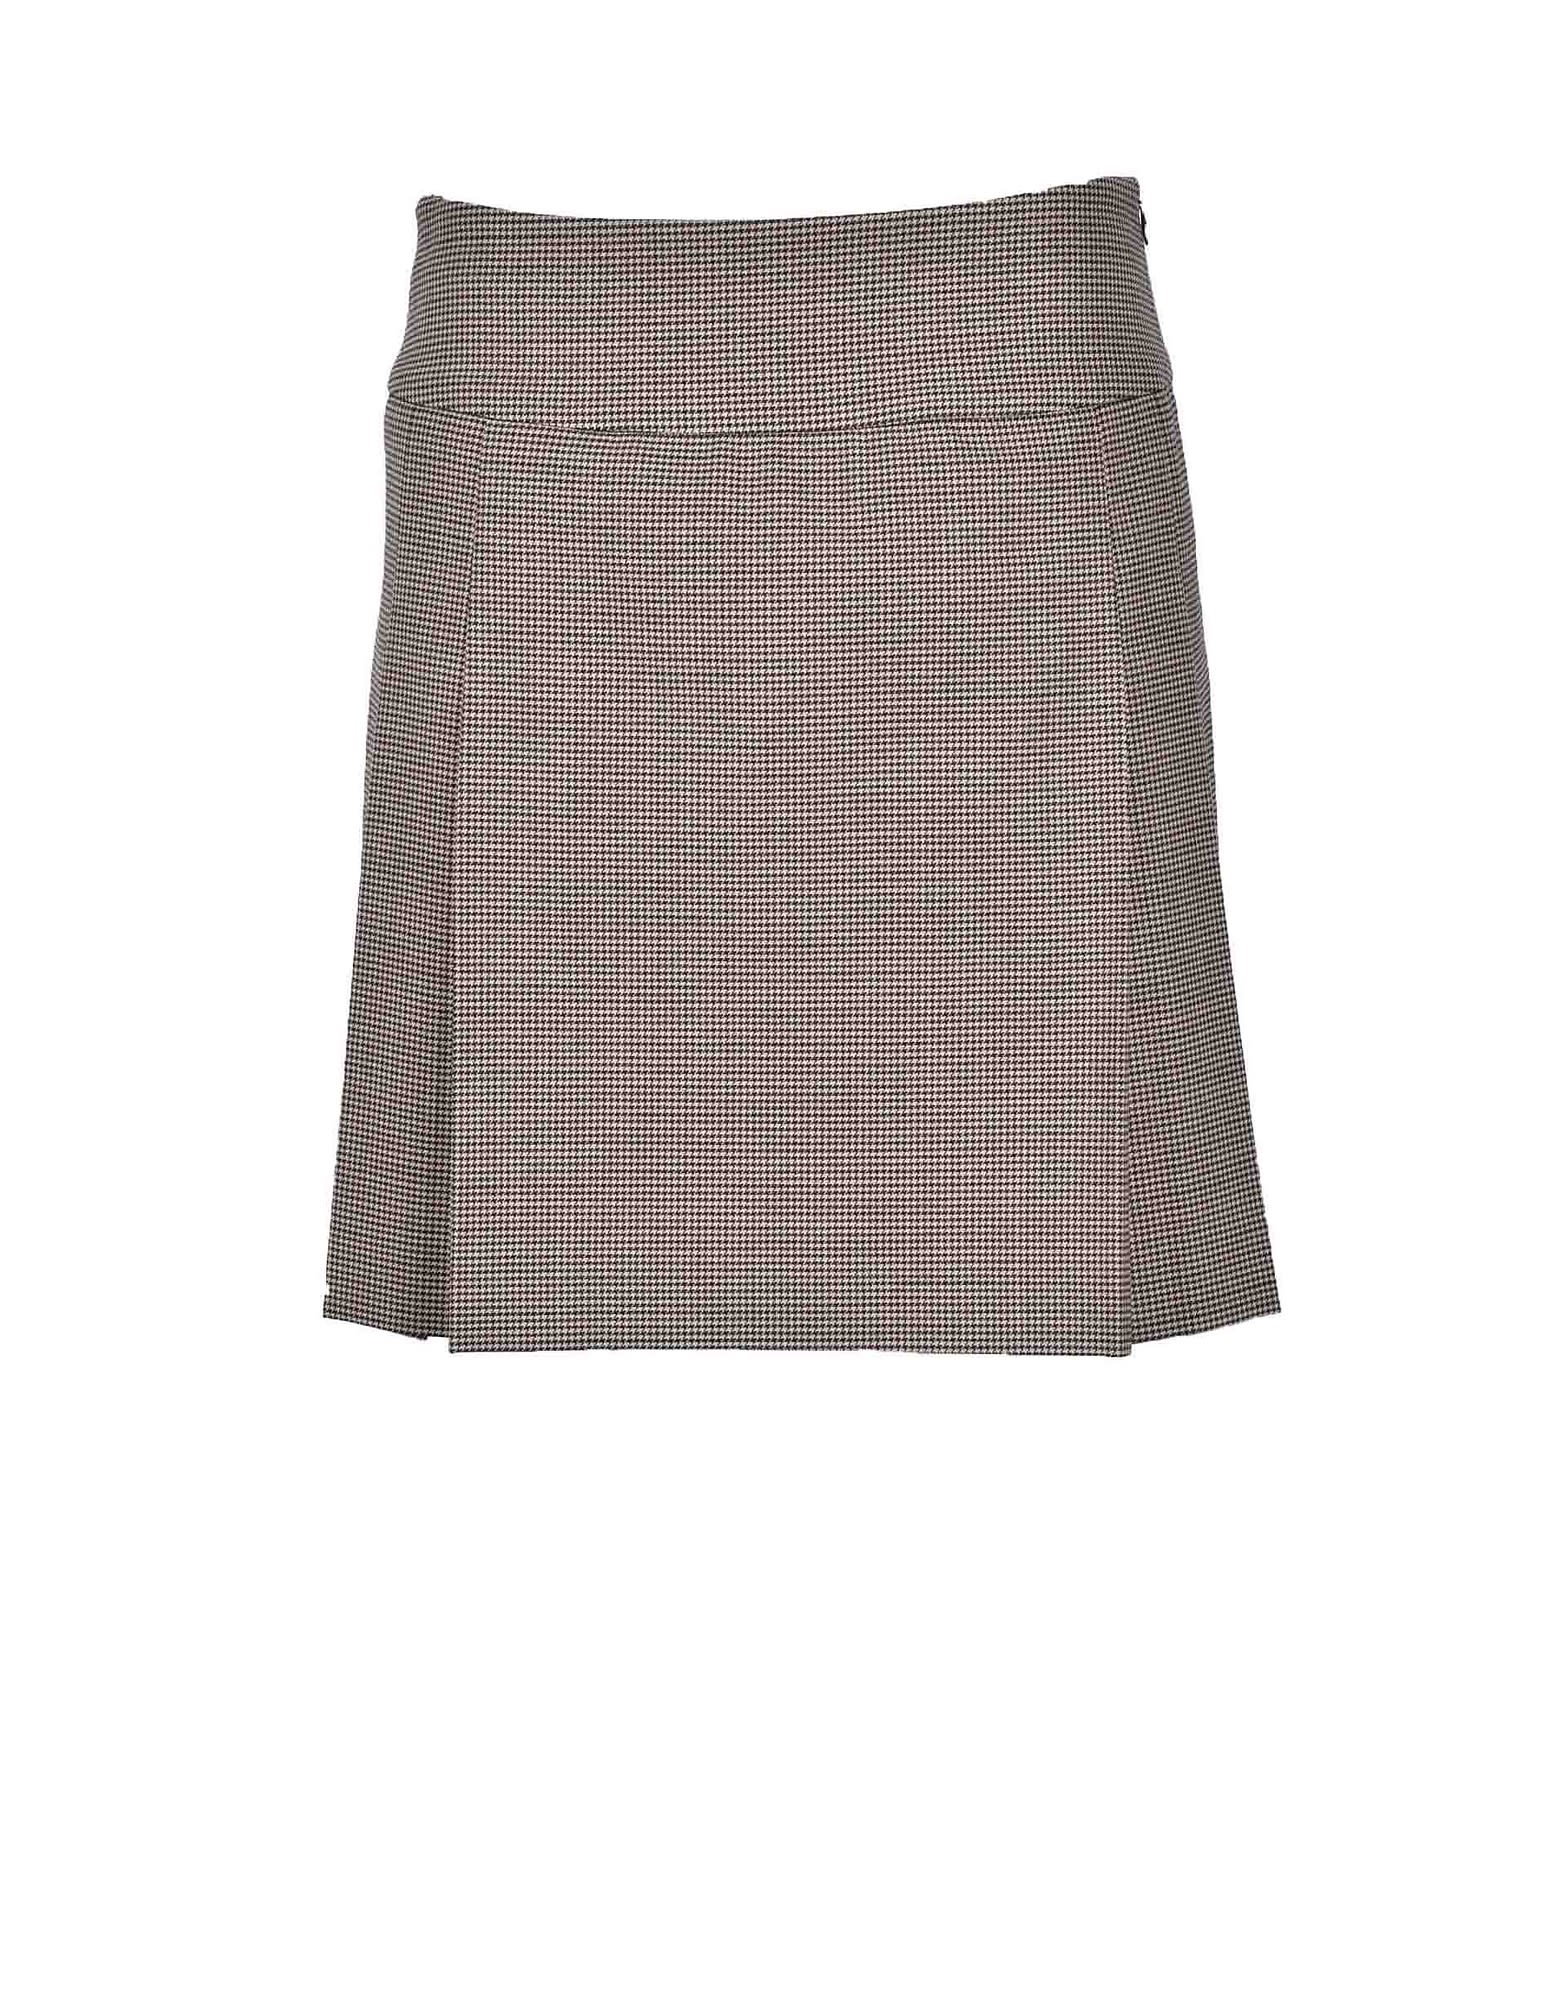 Moschino Womens Brown / Beige Skirt